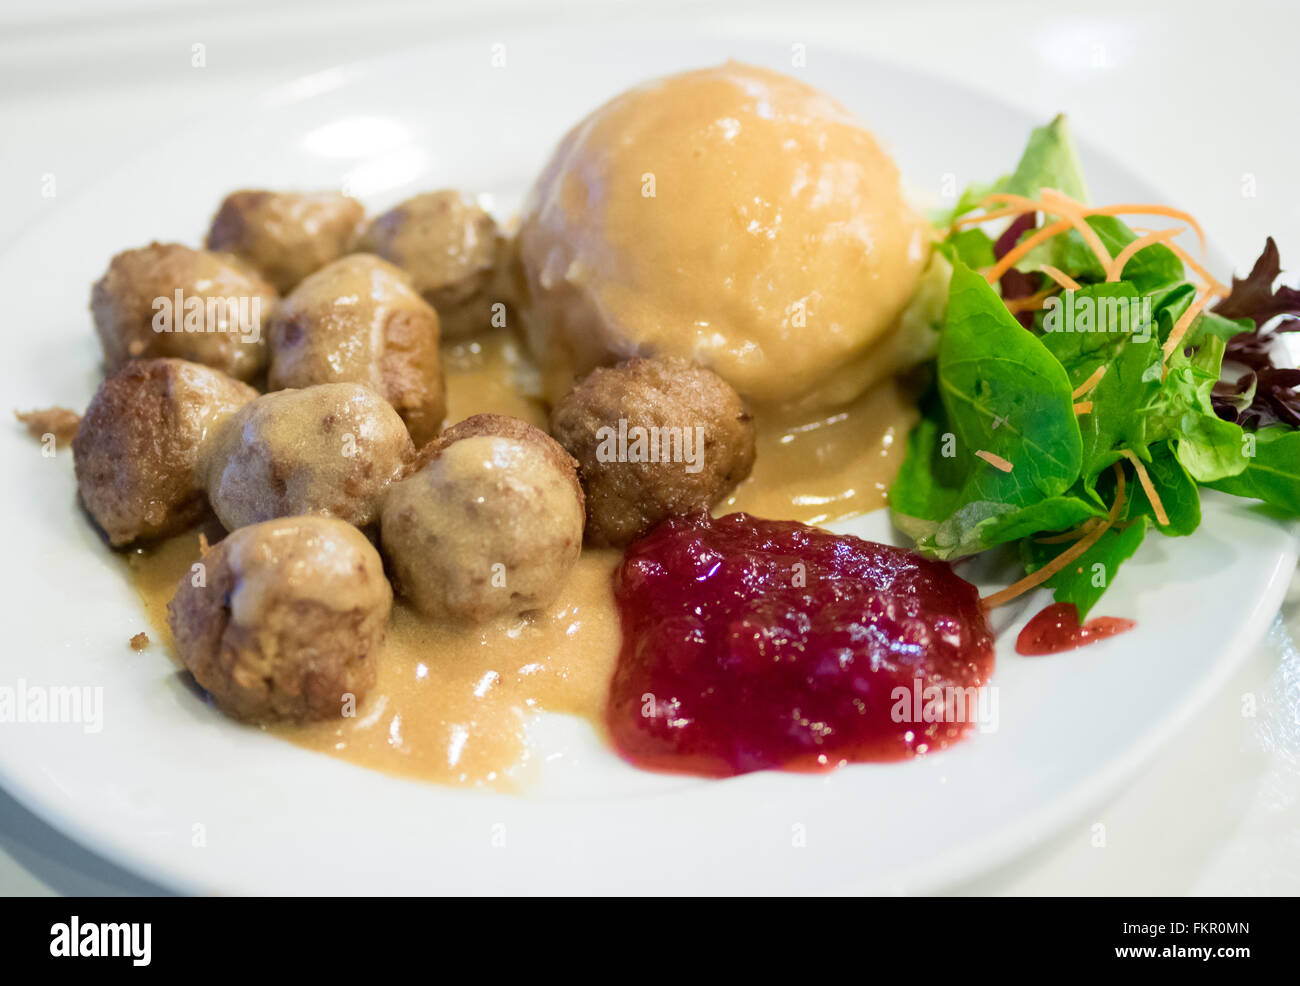 Une assiette de boulettes IKEA, purée de pommes de terre, sauce à la crème,  salade verte et sauce aux airelles Photo Stock - Alamy